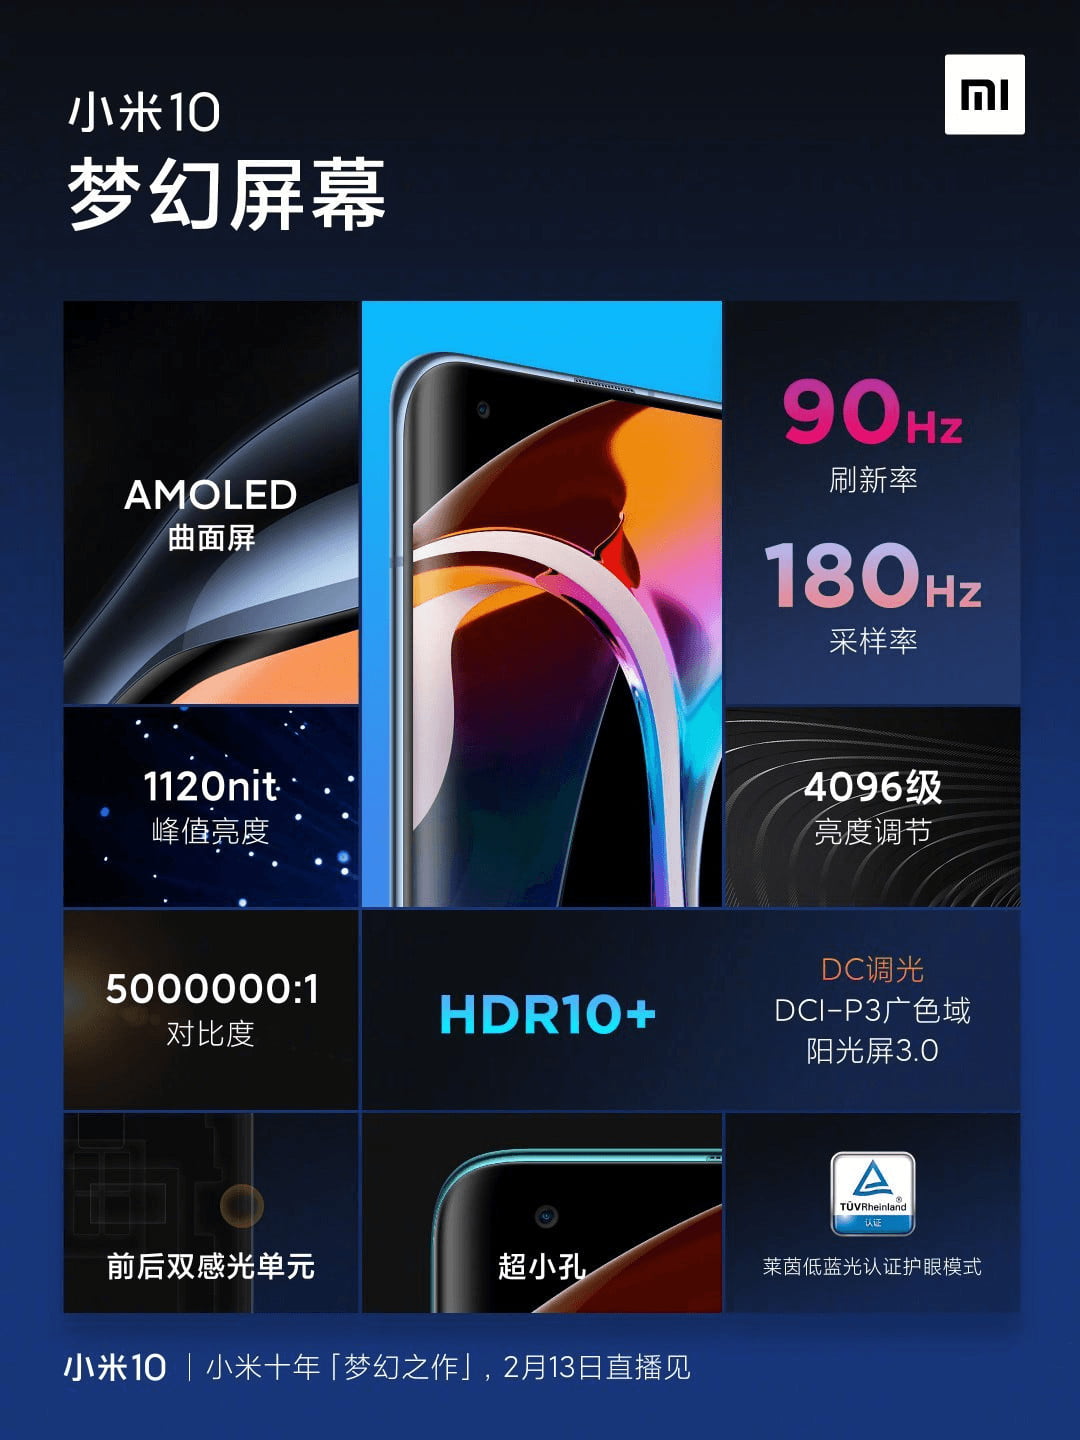 Xiaomi Mi 10 Display